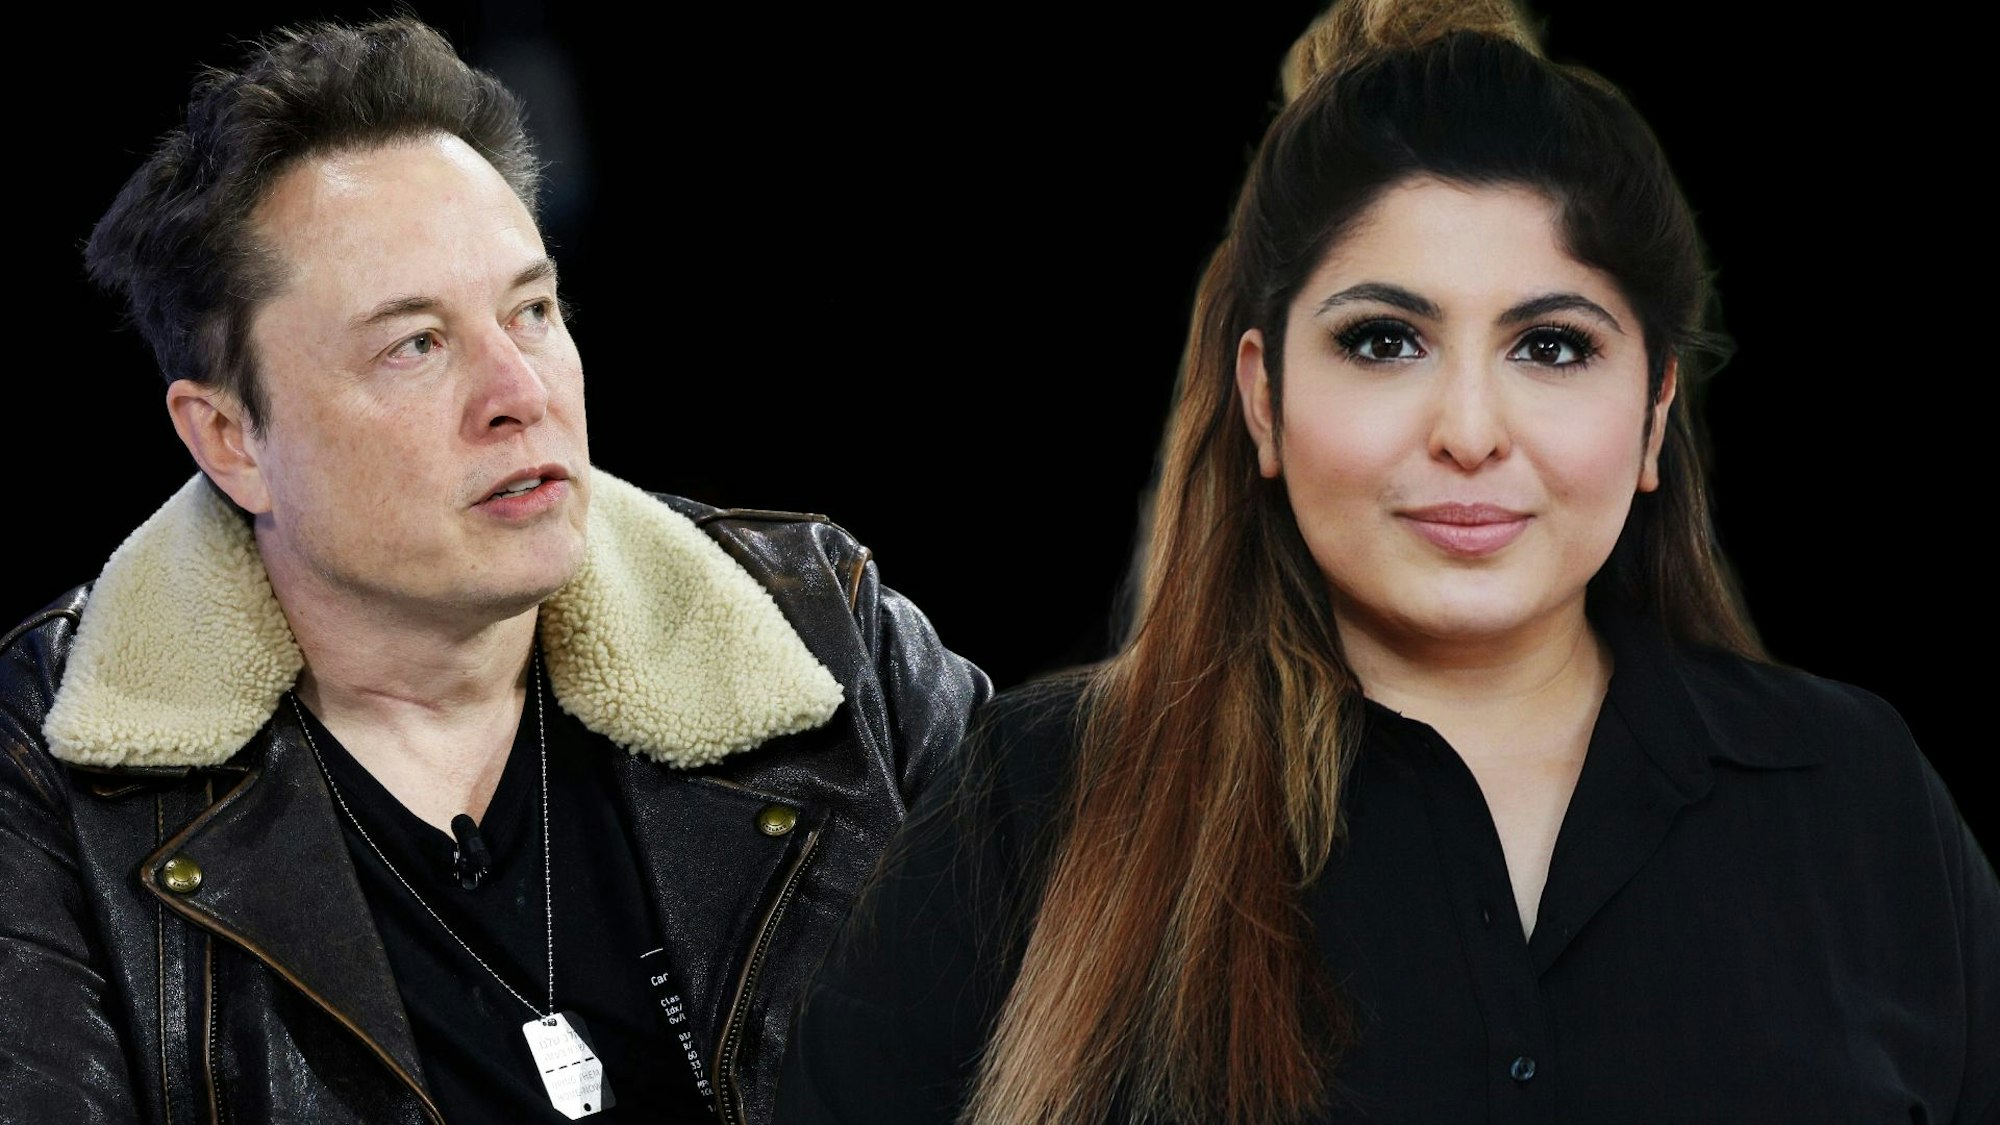 Techmilliardär Elon Musk hat der ehemaligen Polizeihochschuldozentin Bahar Aslan seine Hilfe angeboten. (Fotocollage)